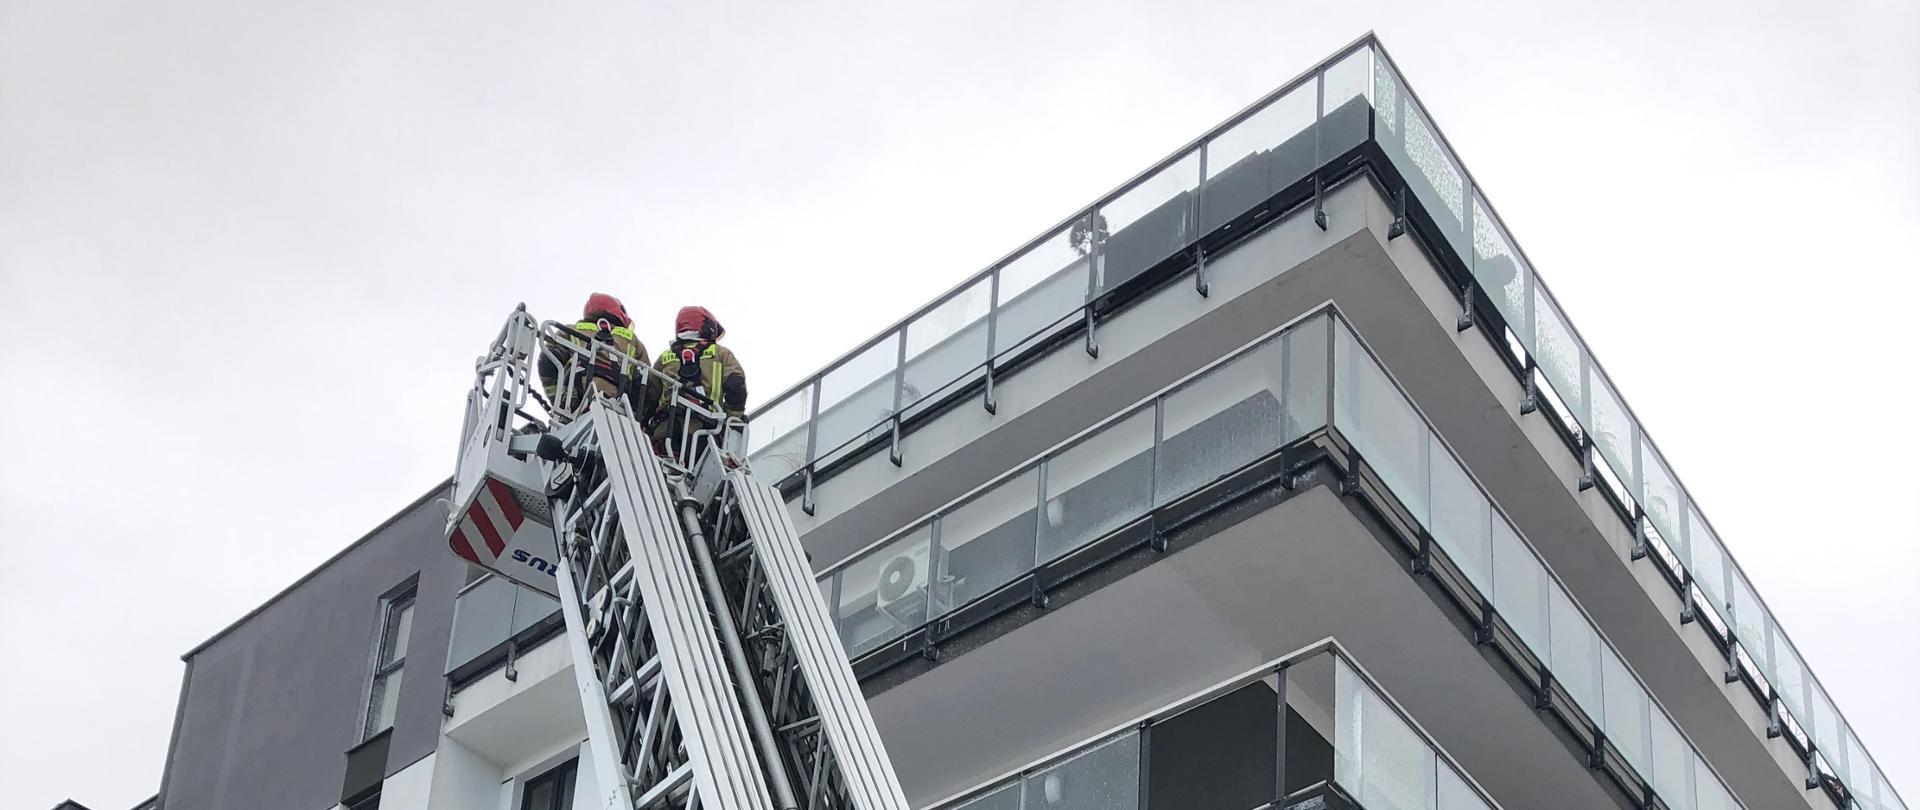 Zdjęcie przedstawia strażaków pracujących na drabinie mechanicznej usuwających szyby w balustradach balkonowych, które zostały uszkodzone przez podmuchy wiatru.